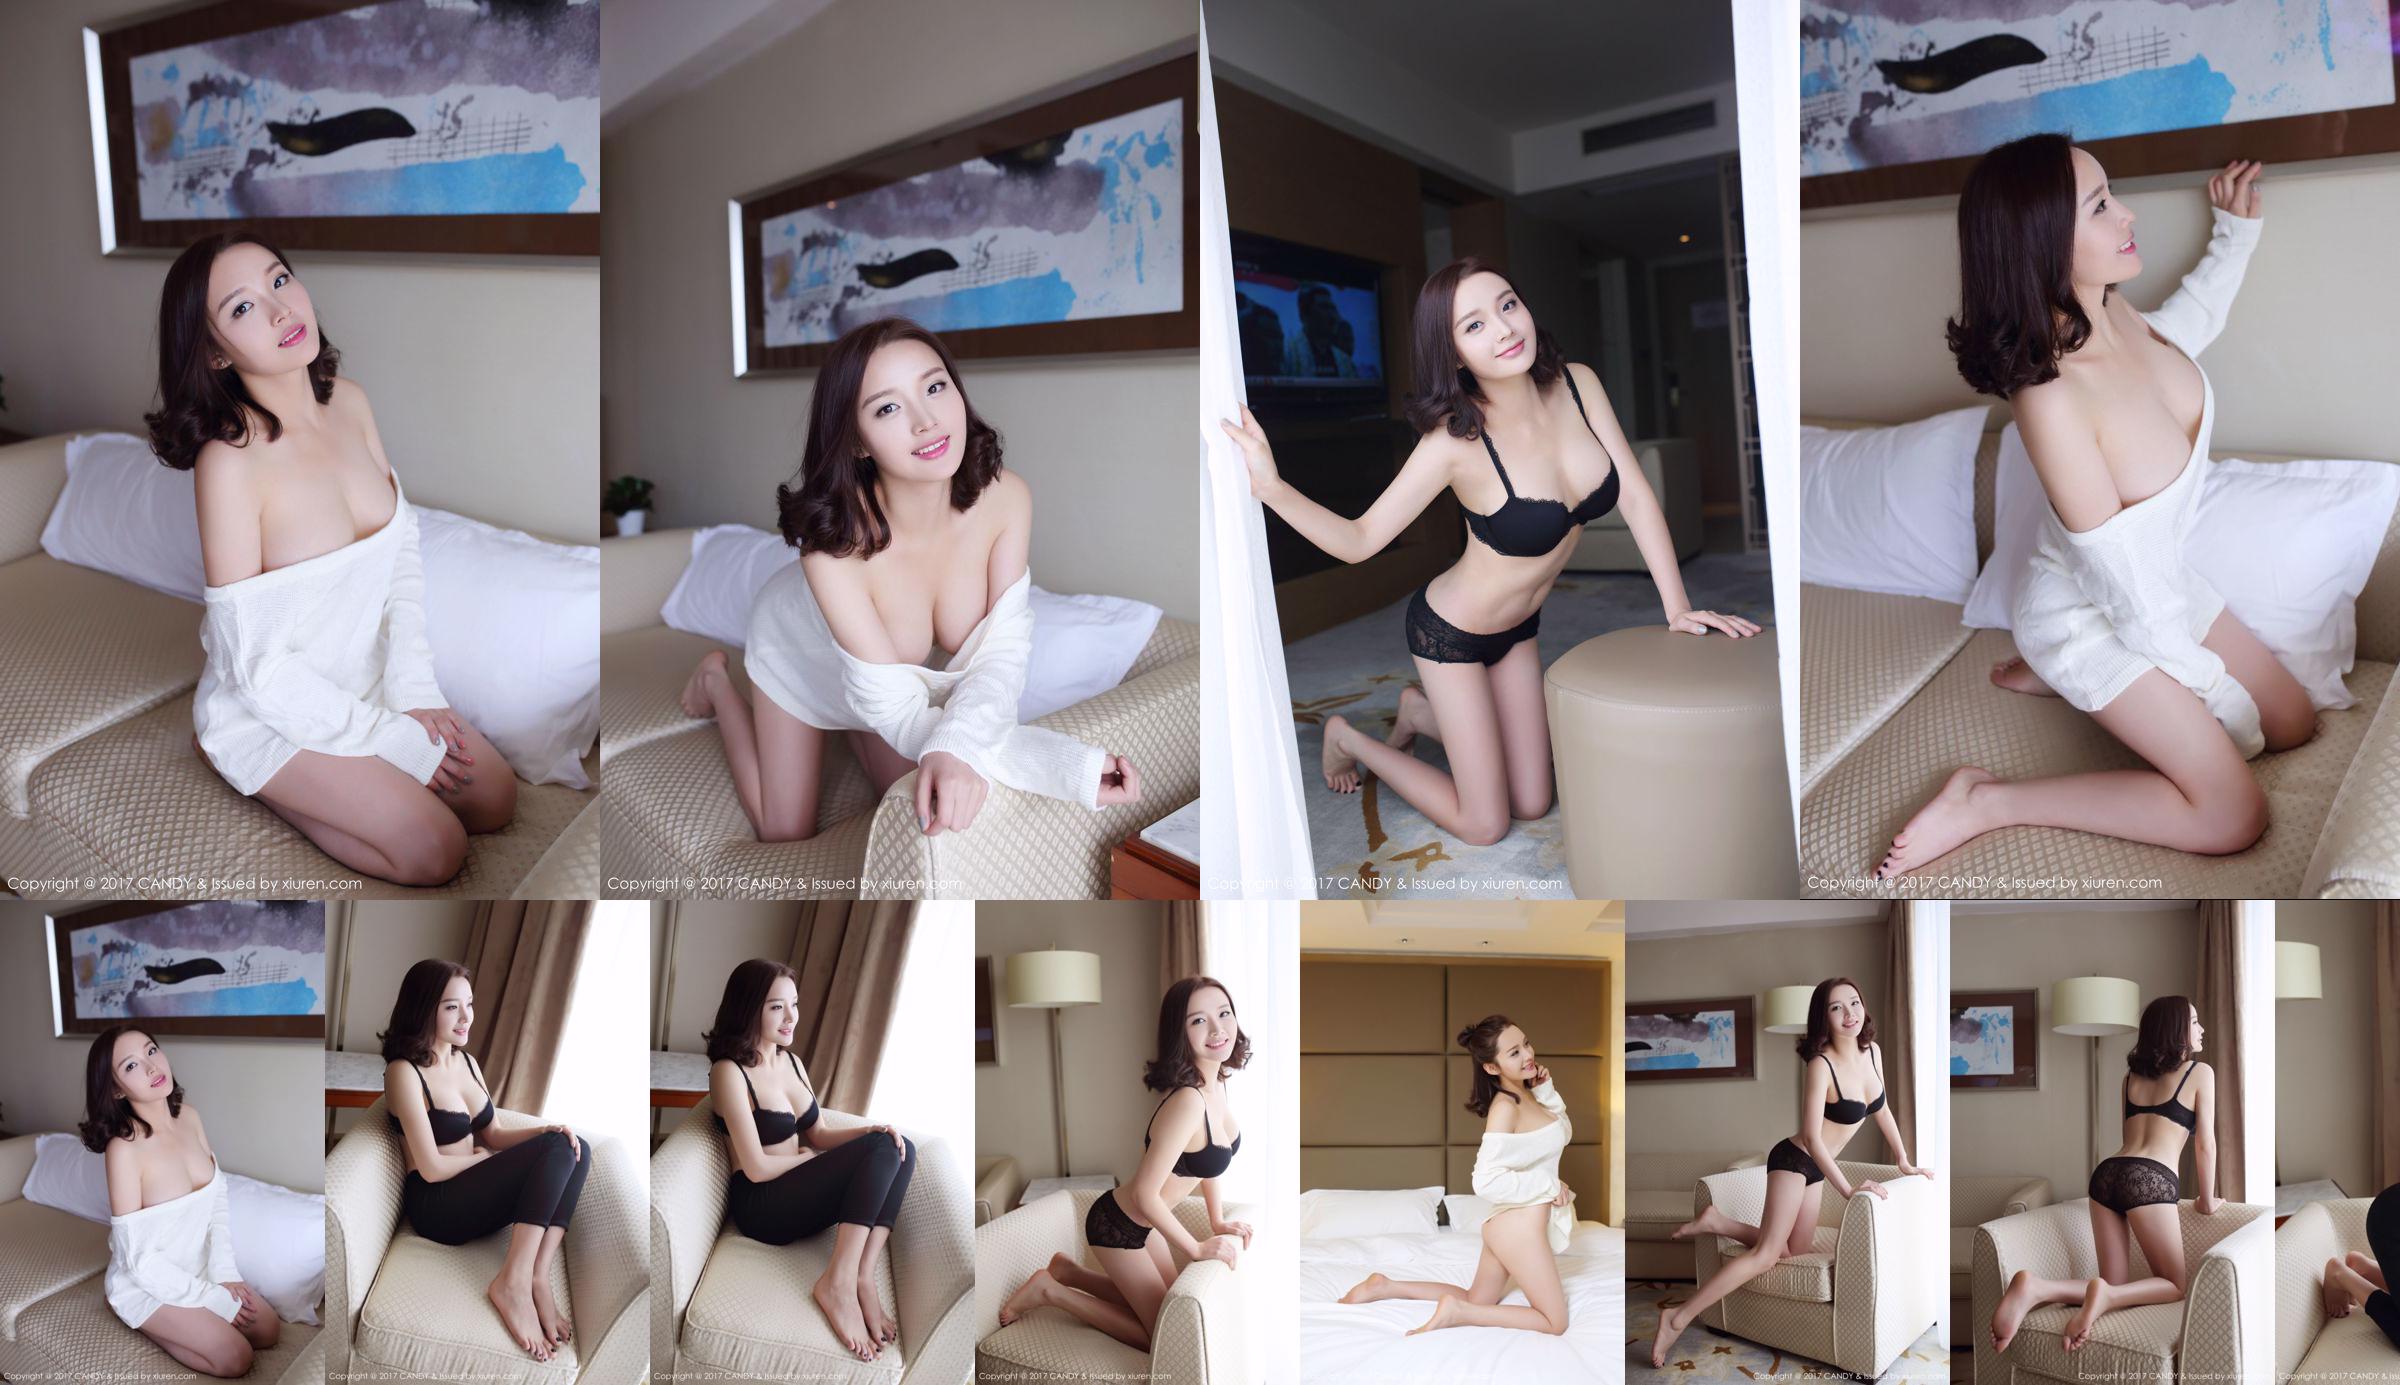 Wang Shiqi „Piękna dziewczyna z sąsiedztwa” [Candy Pictorial CANDY] tom 033 No.227613 Strona 4